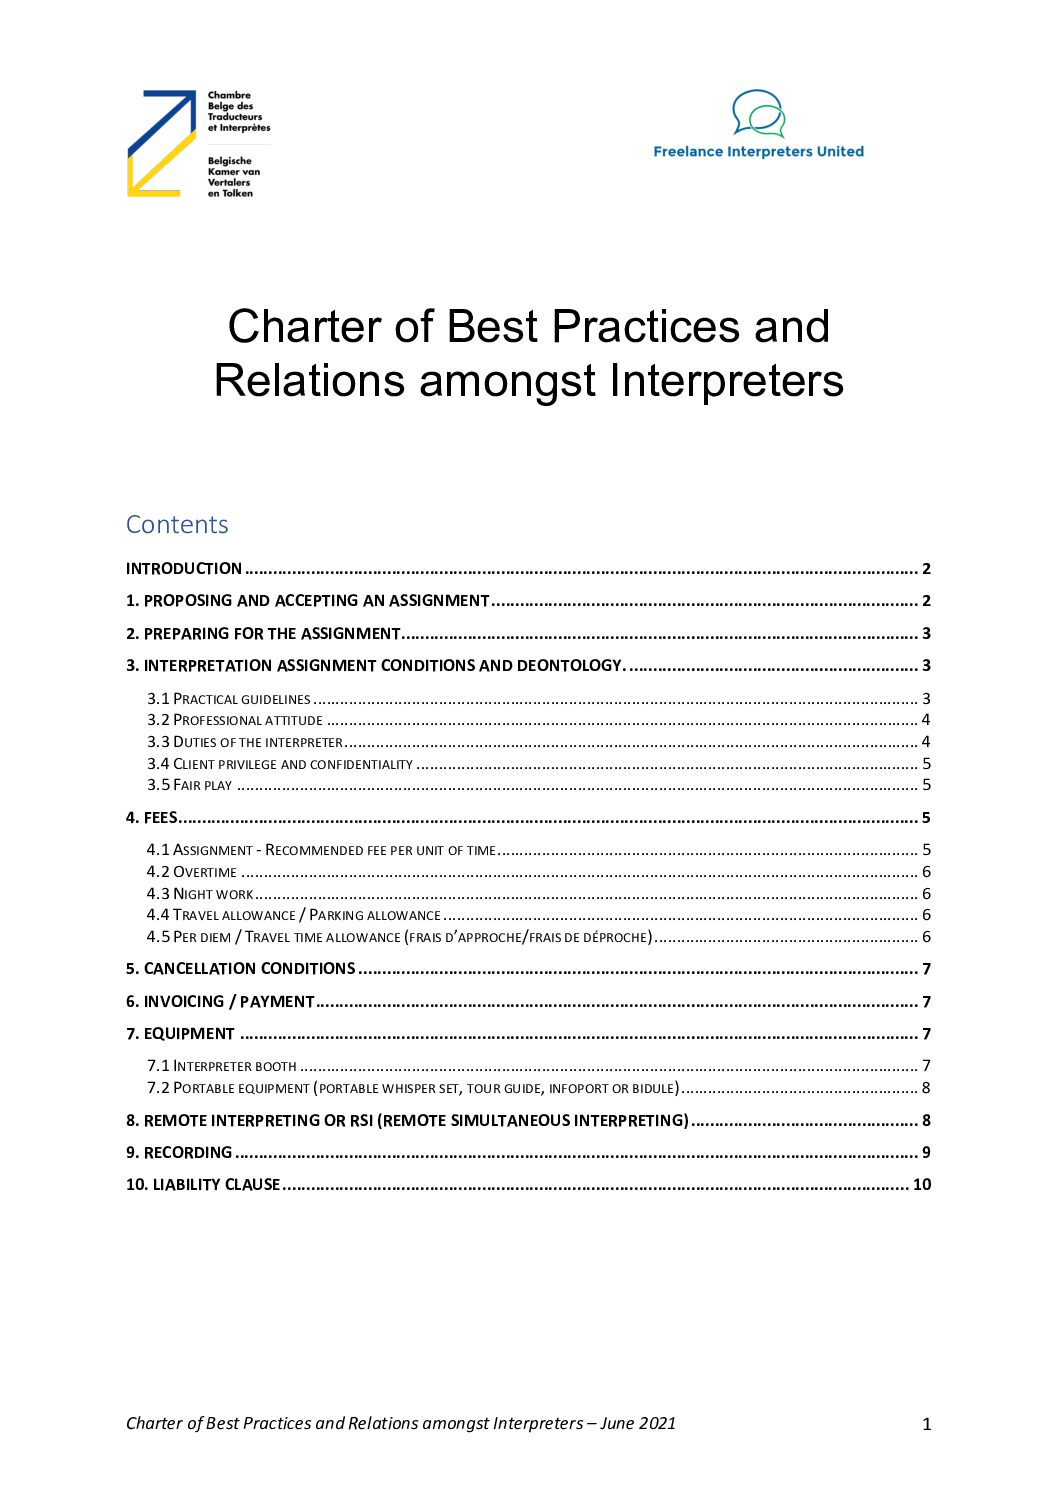 Image de présentation pour le document : Interprètes – Charte de bonnes pratiques de collégialité